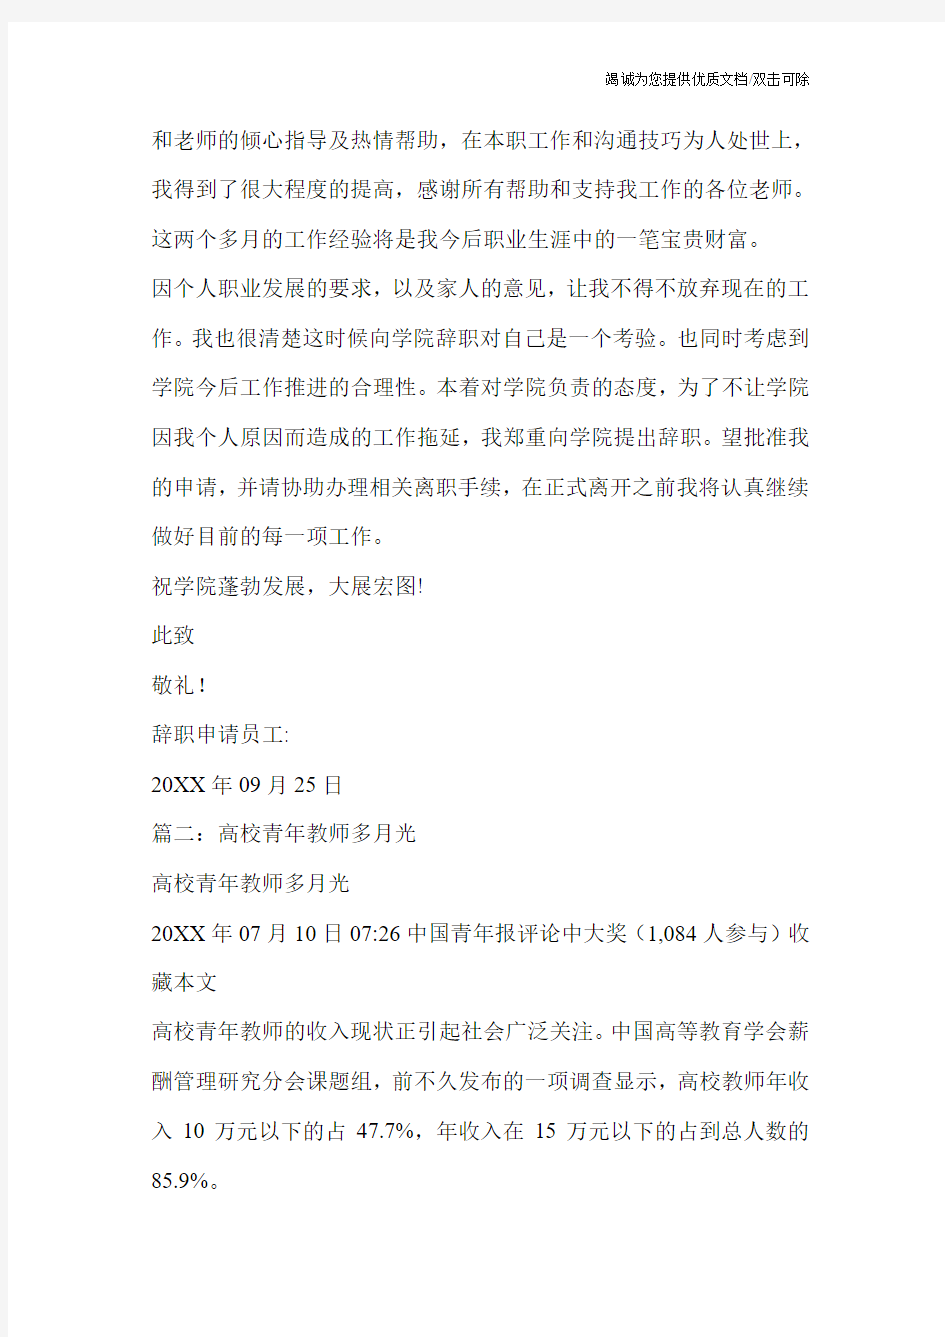 南京某高校青年教师写给大学校长的辞职信